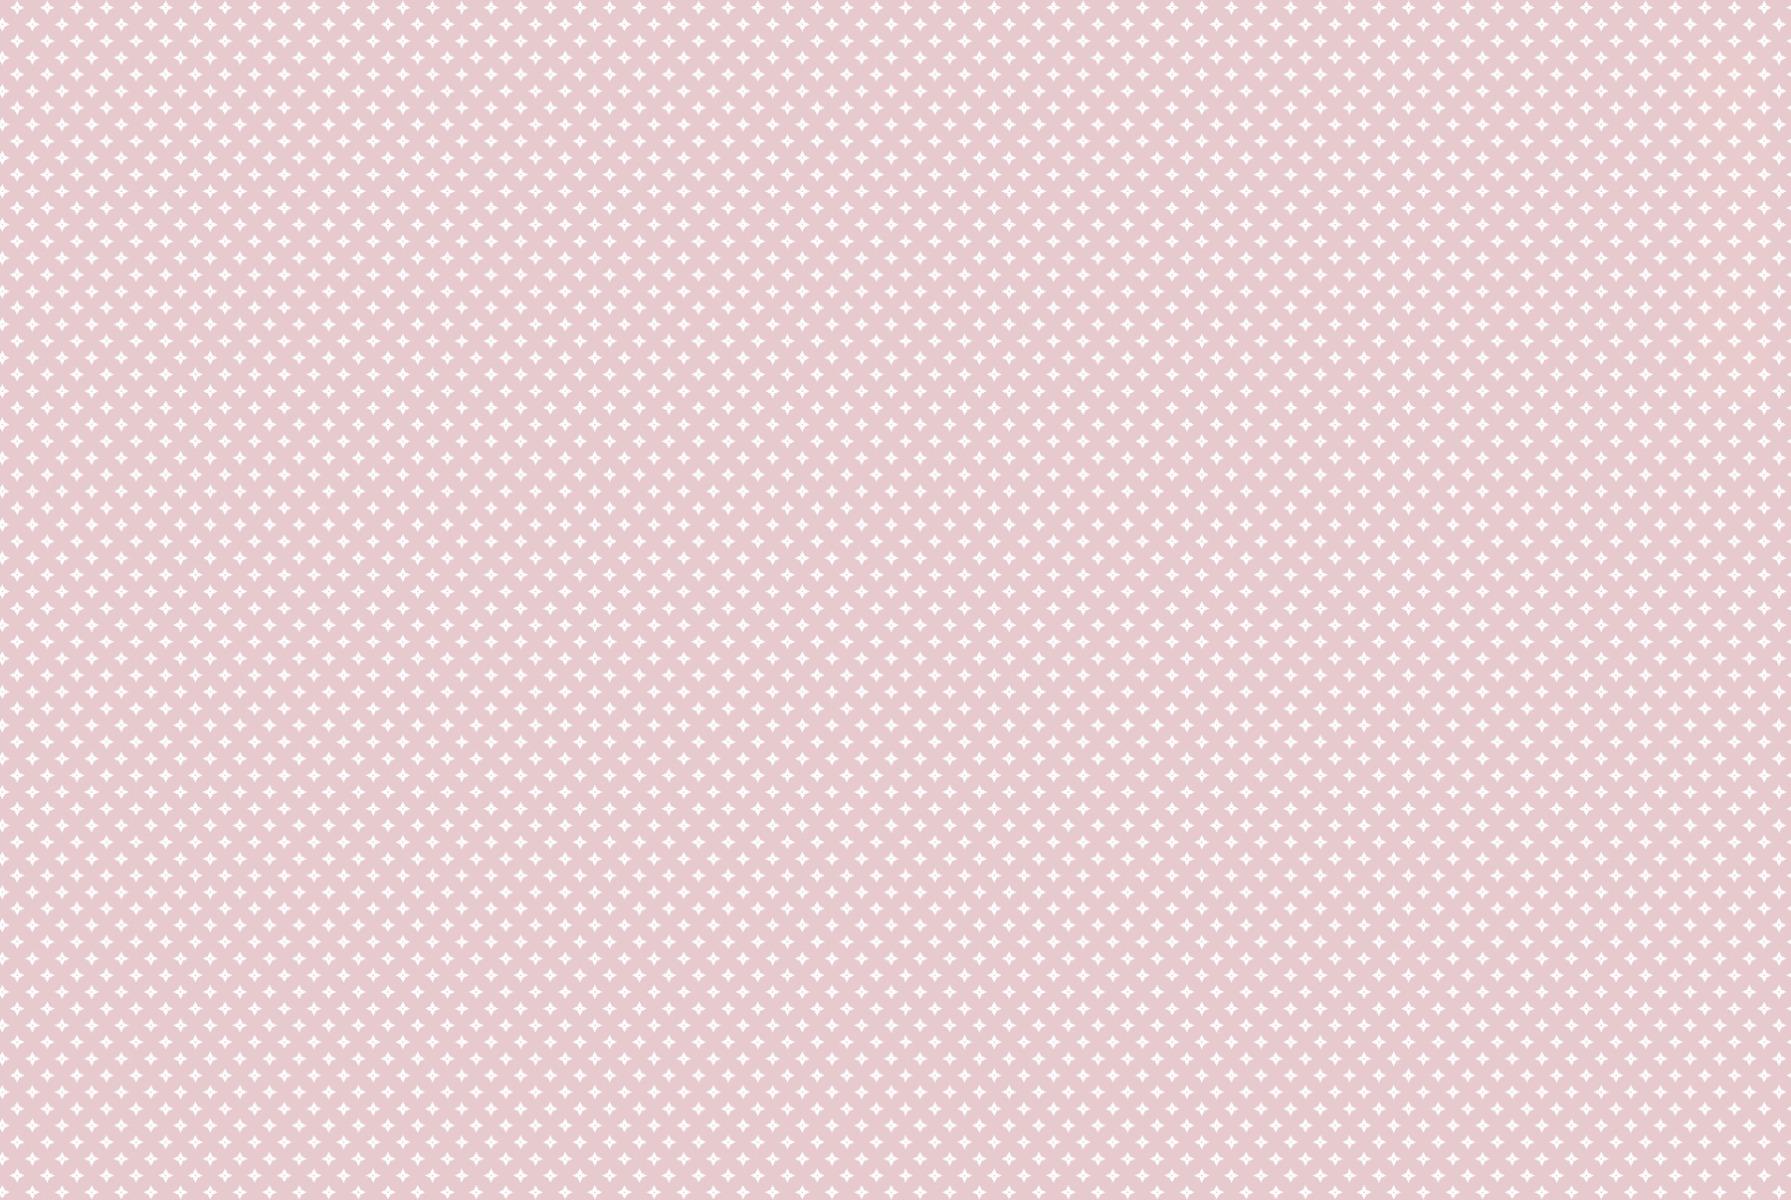 GFT SPB Floral Grid Pink